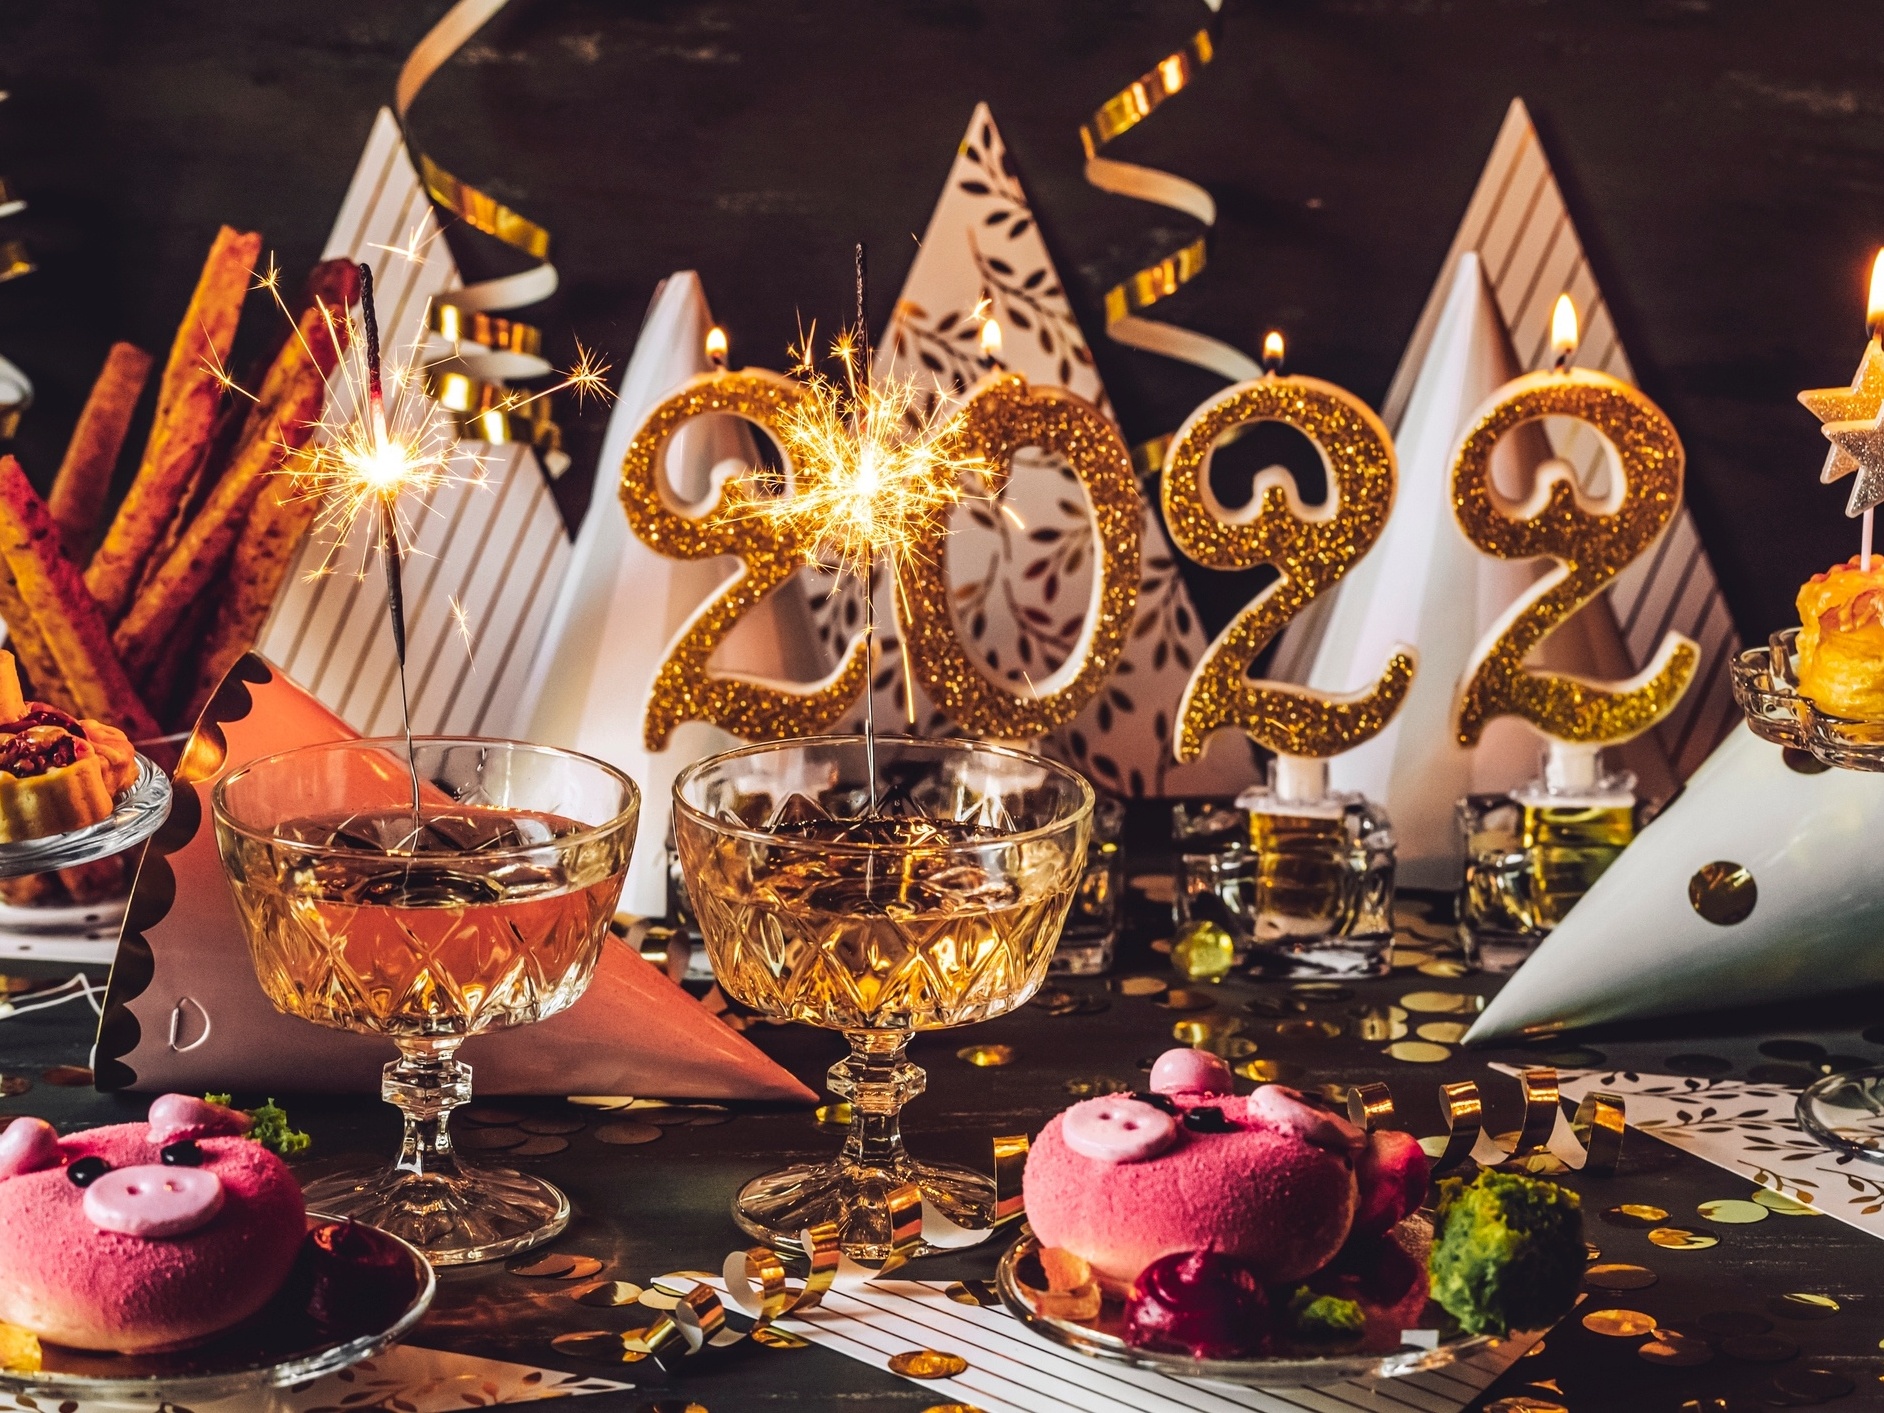 Ceia de Ano-Novo: veja 20 comidas para um banquete ou refeição simples